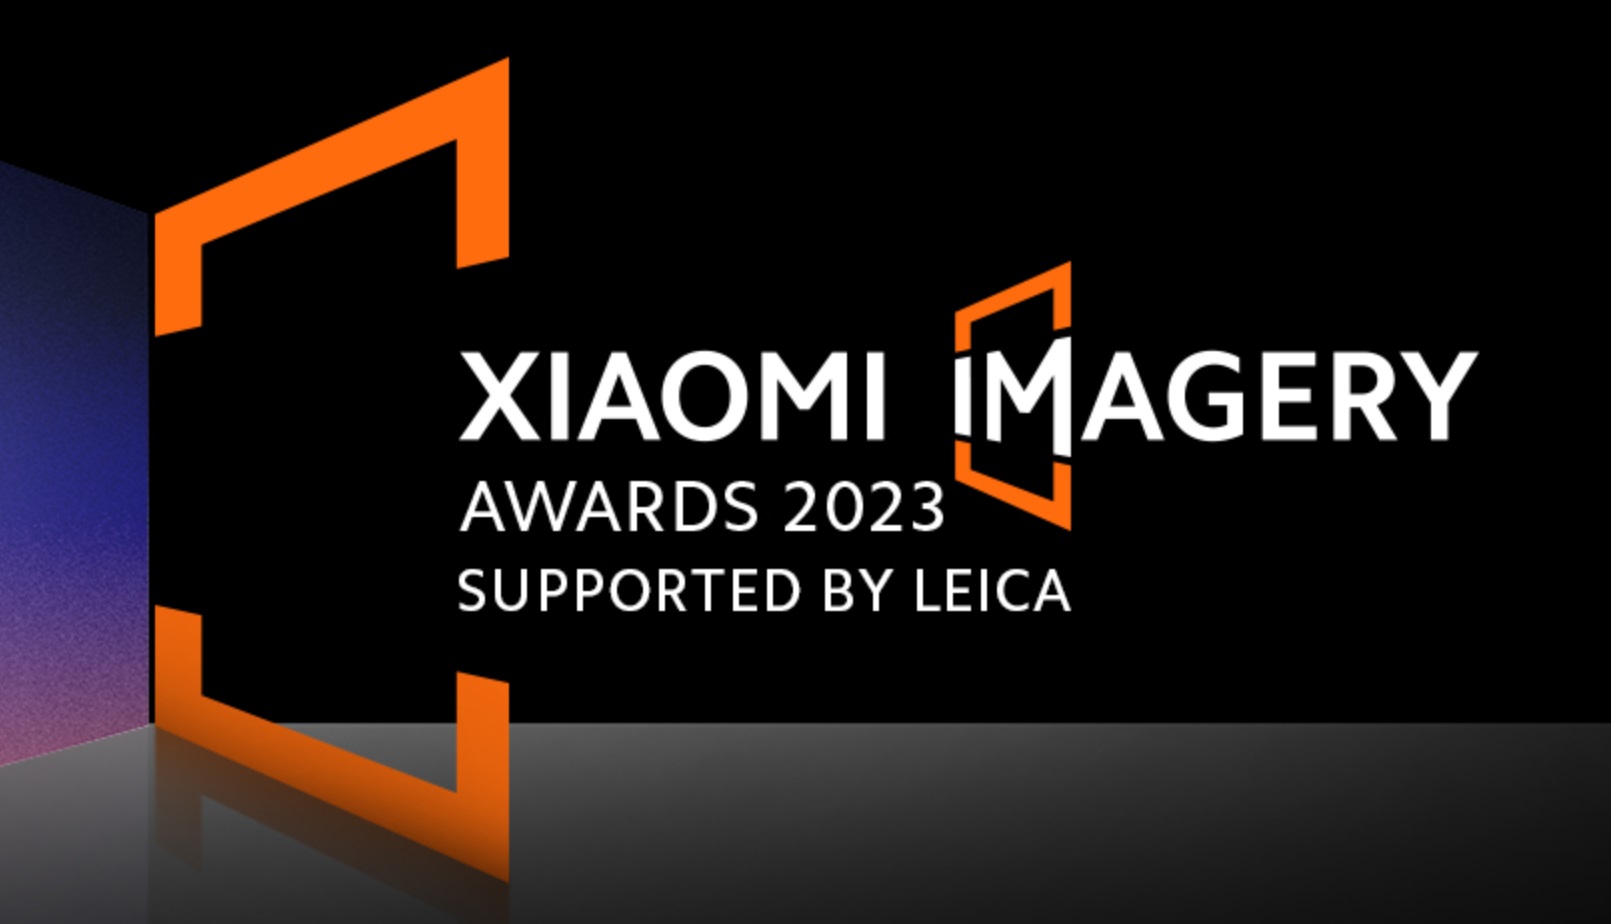 Xiaomi Imagery Awards 2023 - logo